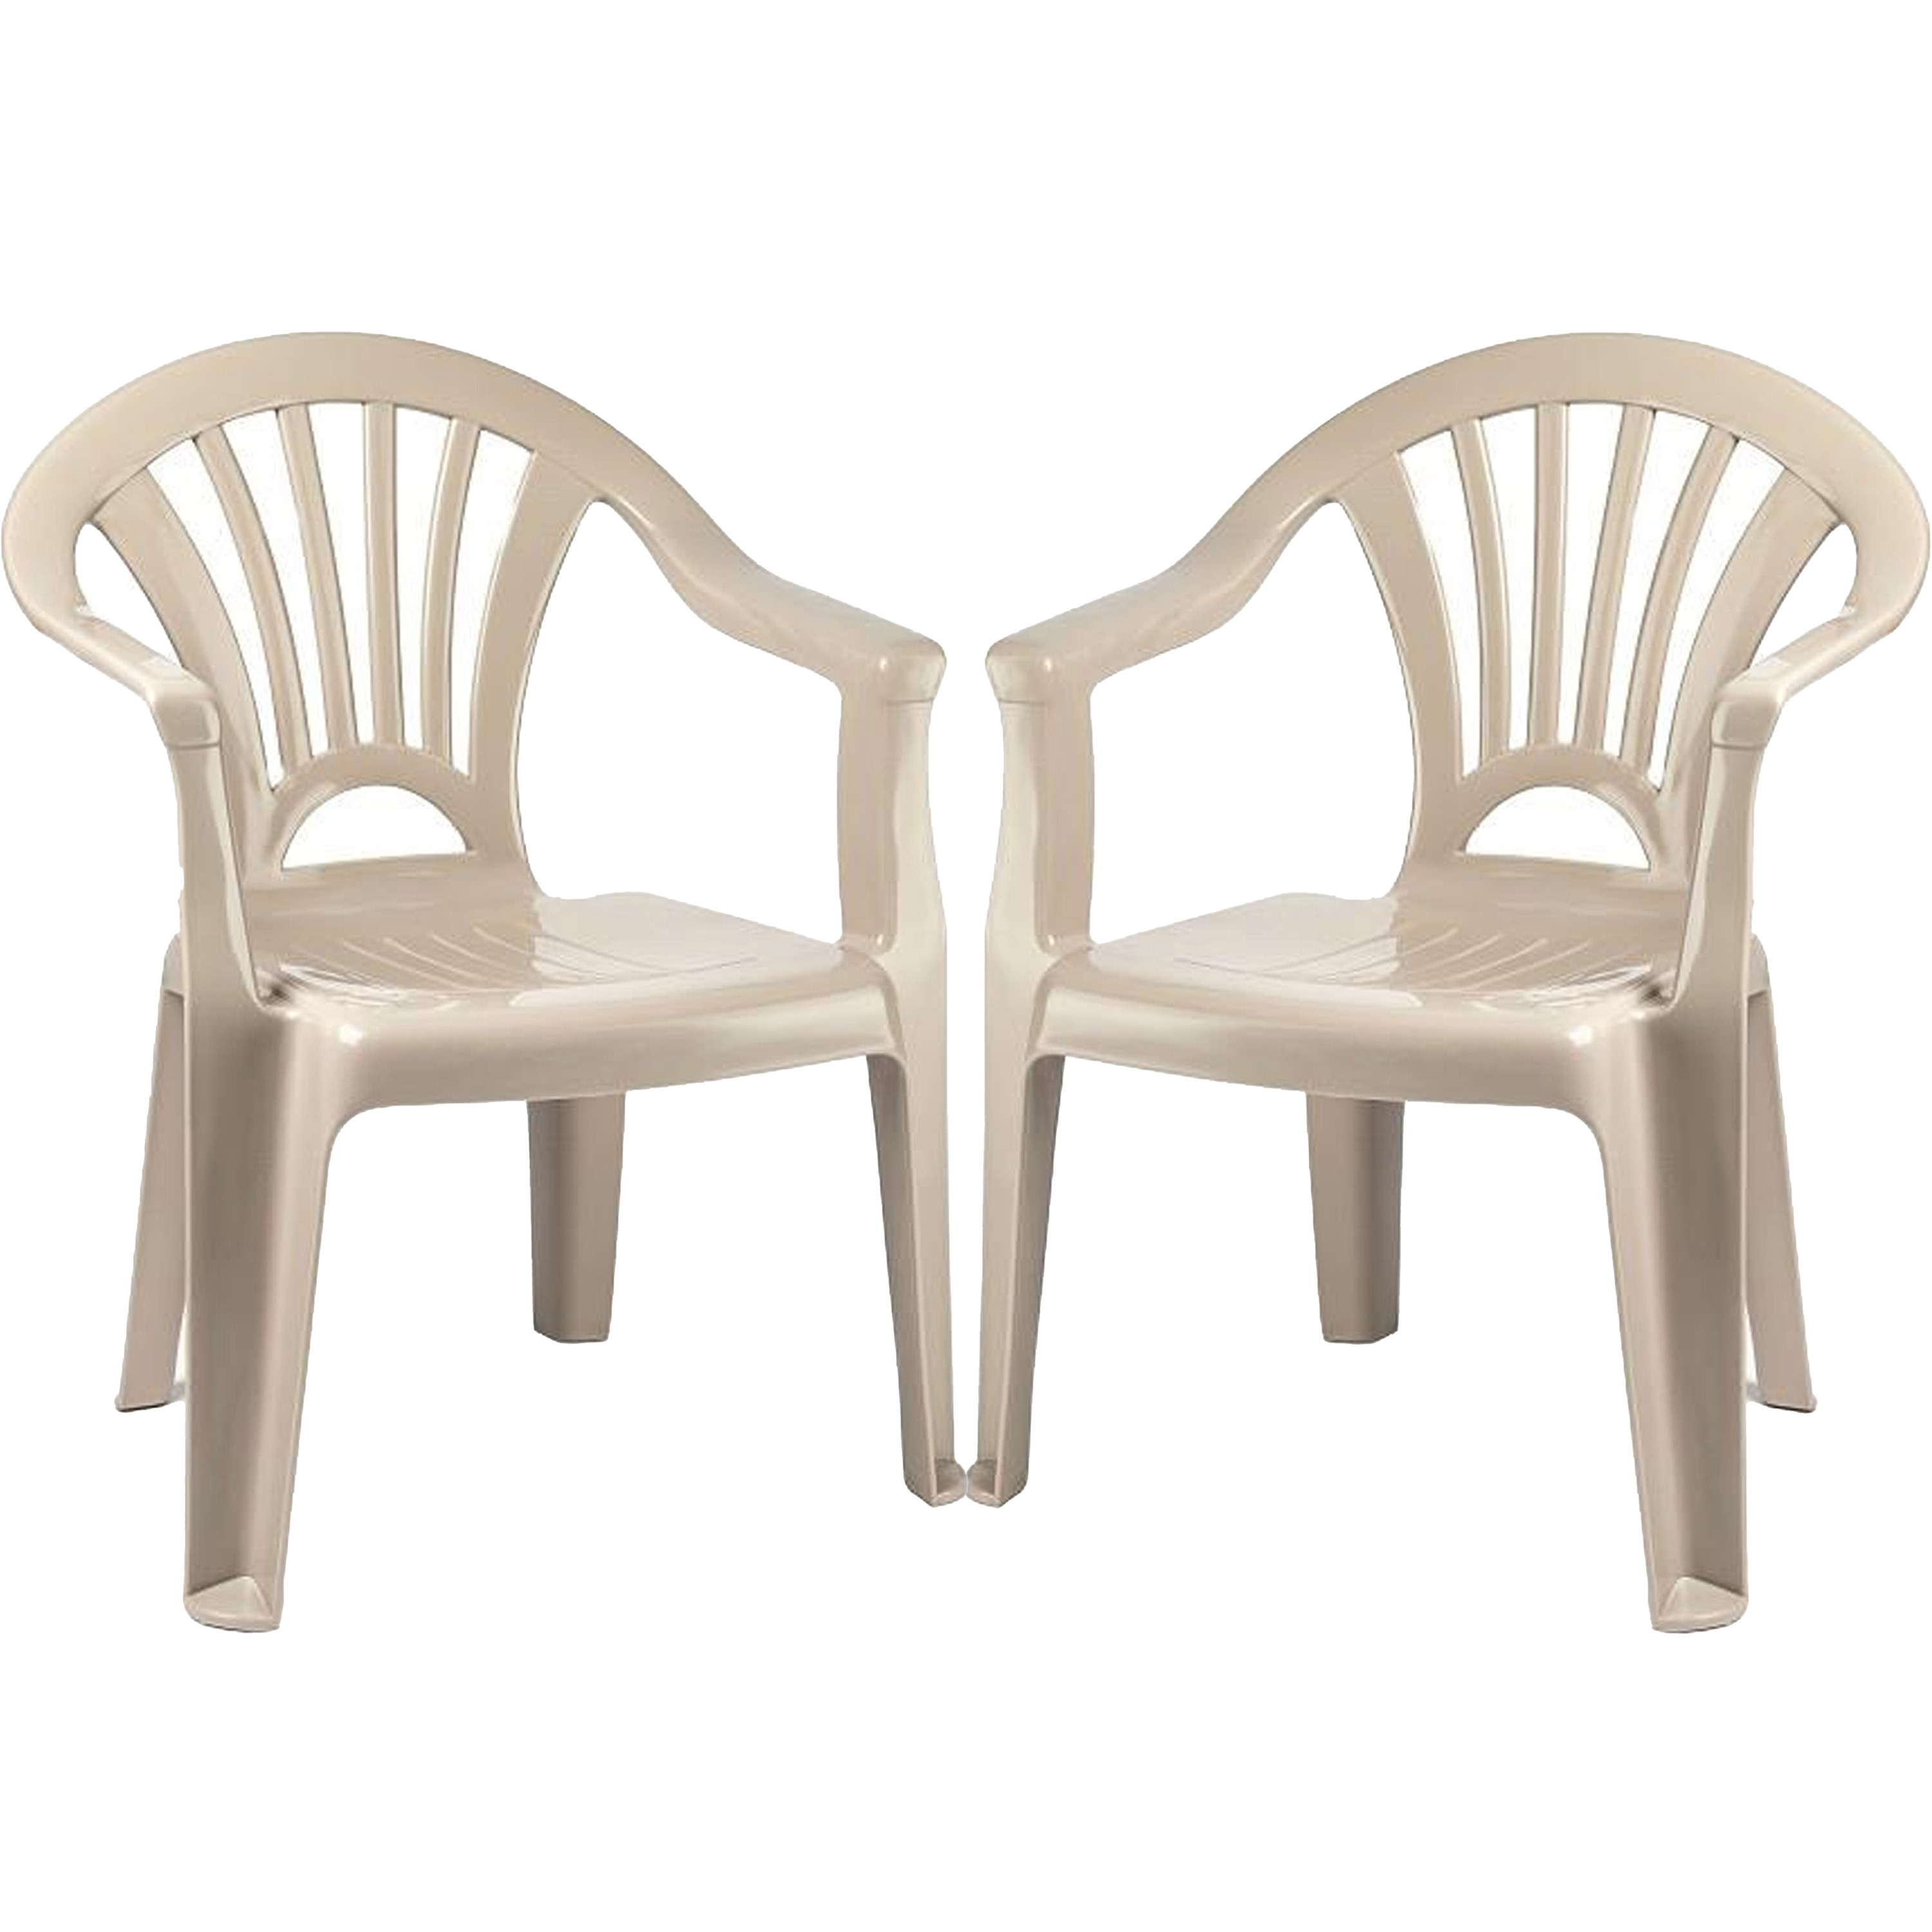 PlasticForte Kinderstoel - 2x stuks - kunststof - beige - 35 x 28 x 50 cm - tuin/camping/slaapkamer -